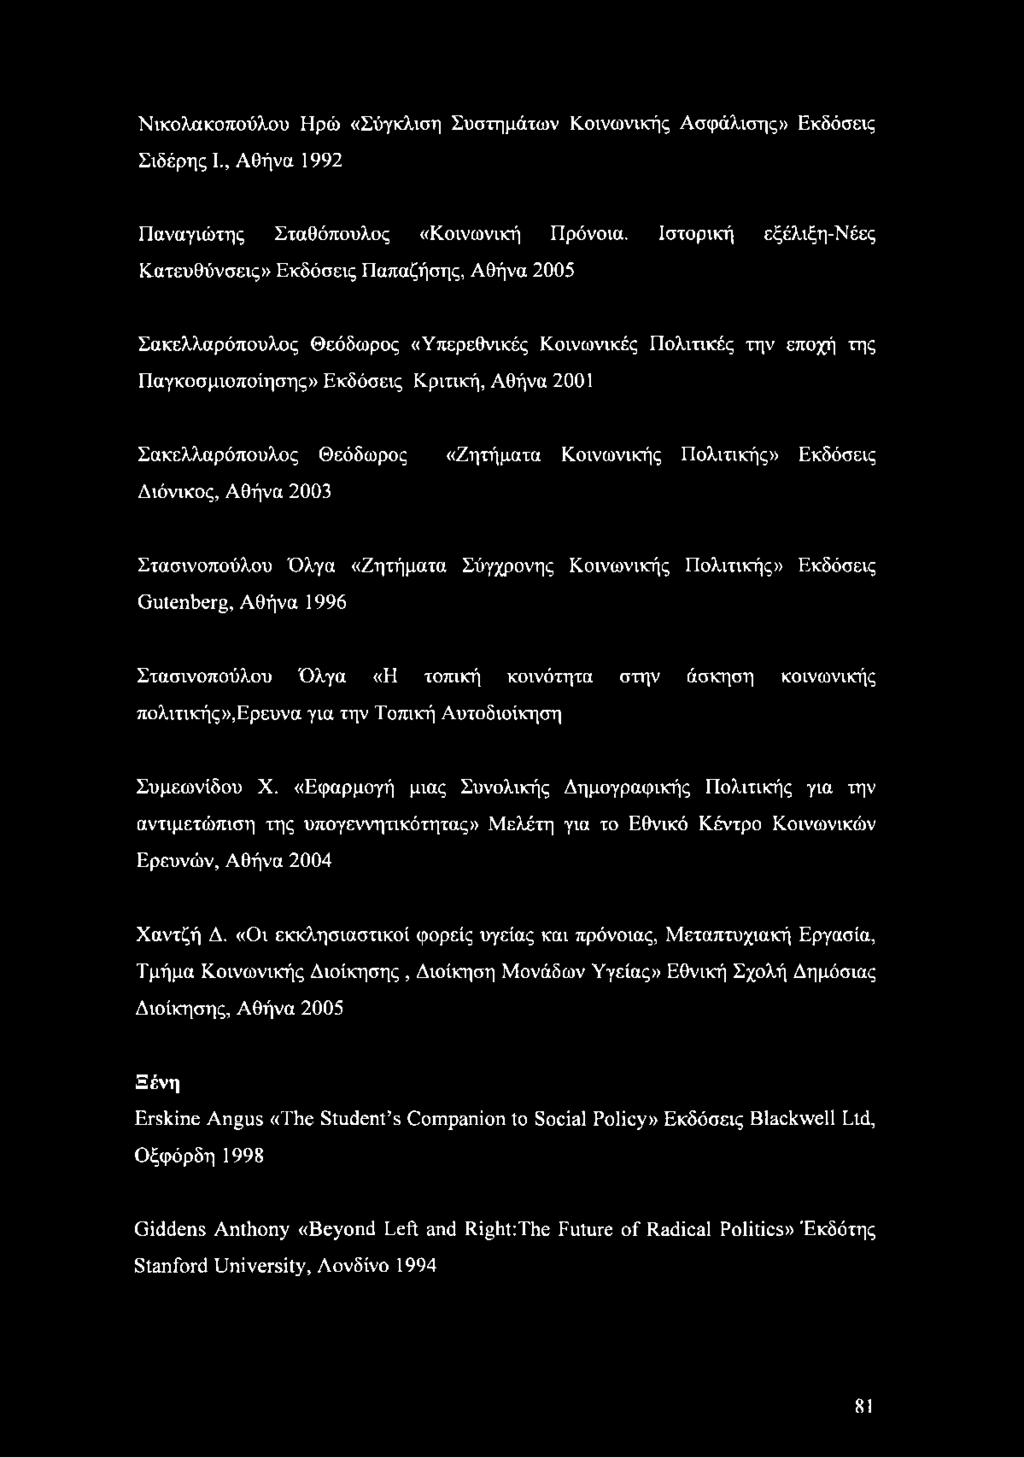 Σακελλαρόπουλος Θεόδωρος Διόνικος, Αθήνα 2003 «Ζητήματα Κοινωνικής Πολιτικής» Εκδόσεις Στασινοπούλου Όλγα «Ζητήματα Σύγχρονης Κοινωνικής Πολιτικής» Εκδόσεις Gutenberg, Αθήνα 1996 Στασινοπούλου Όλγα